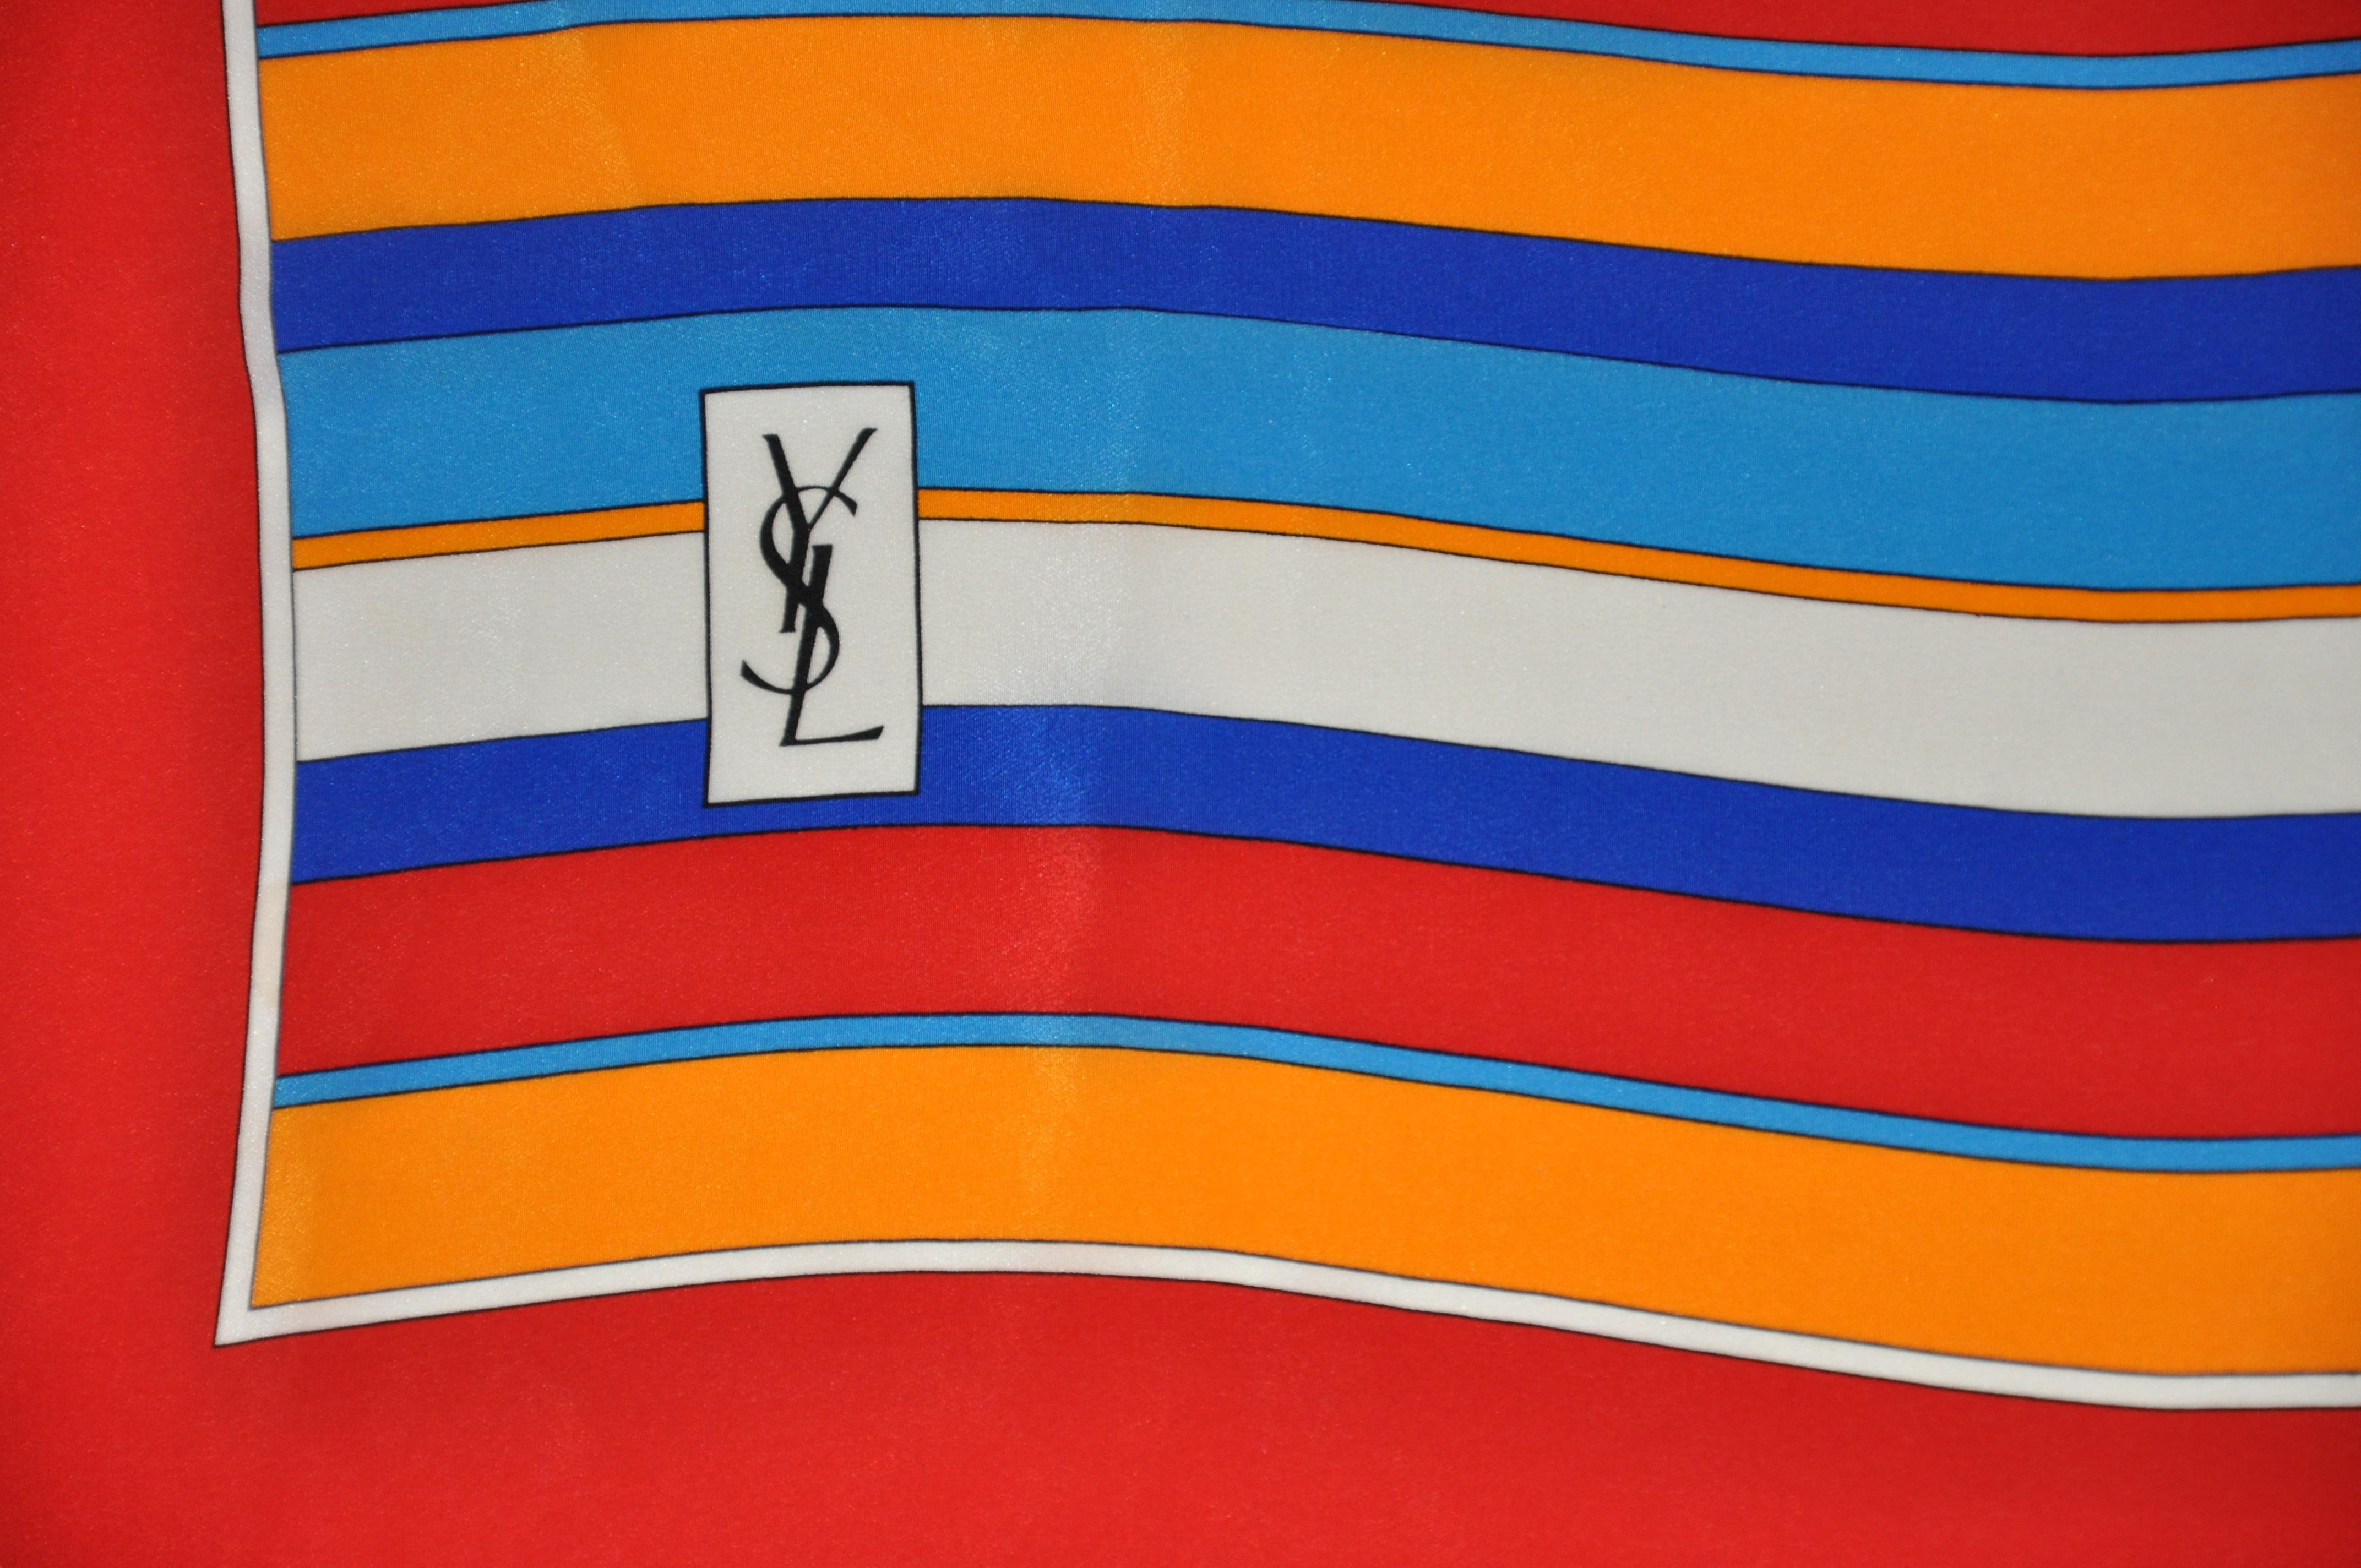        L'écharpe en soie à rayures multicolores merveilleusement vives d'Yves Saint Laurent mesure 34 pouces sur 34 1/2 pouces, avec des bords roulés à la main. Fabriqué en France.